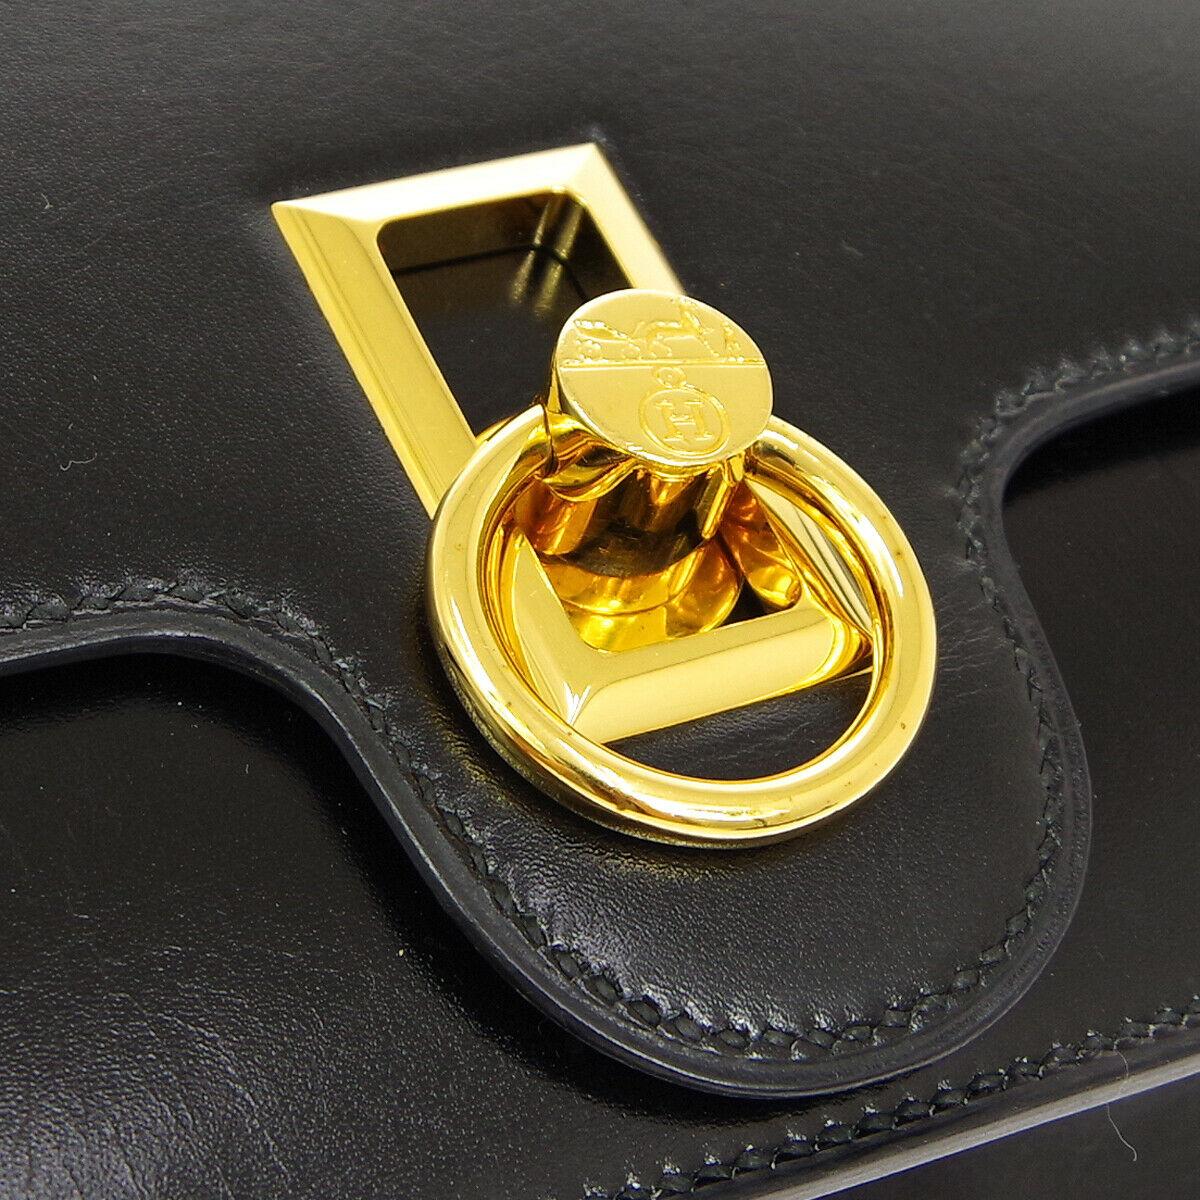 Hermes Black Leather Gold Emblem Toggle Evening Shoulder Flap Bag

Leather
Gold tone hardware
Leather lining
Made in France
Shoulder strap drop 15.5